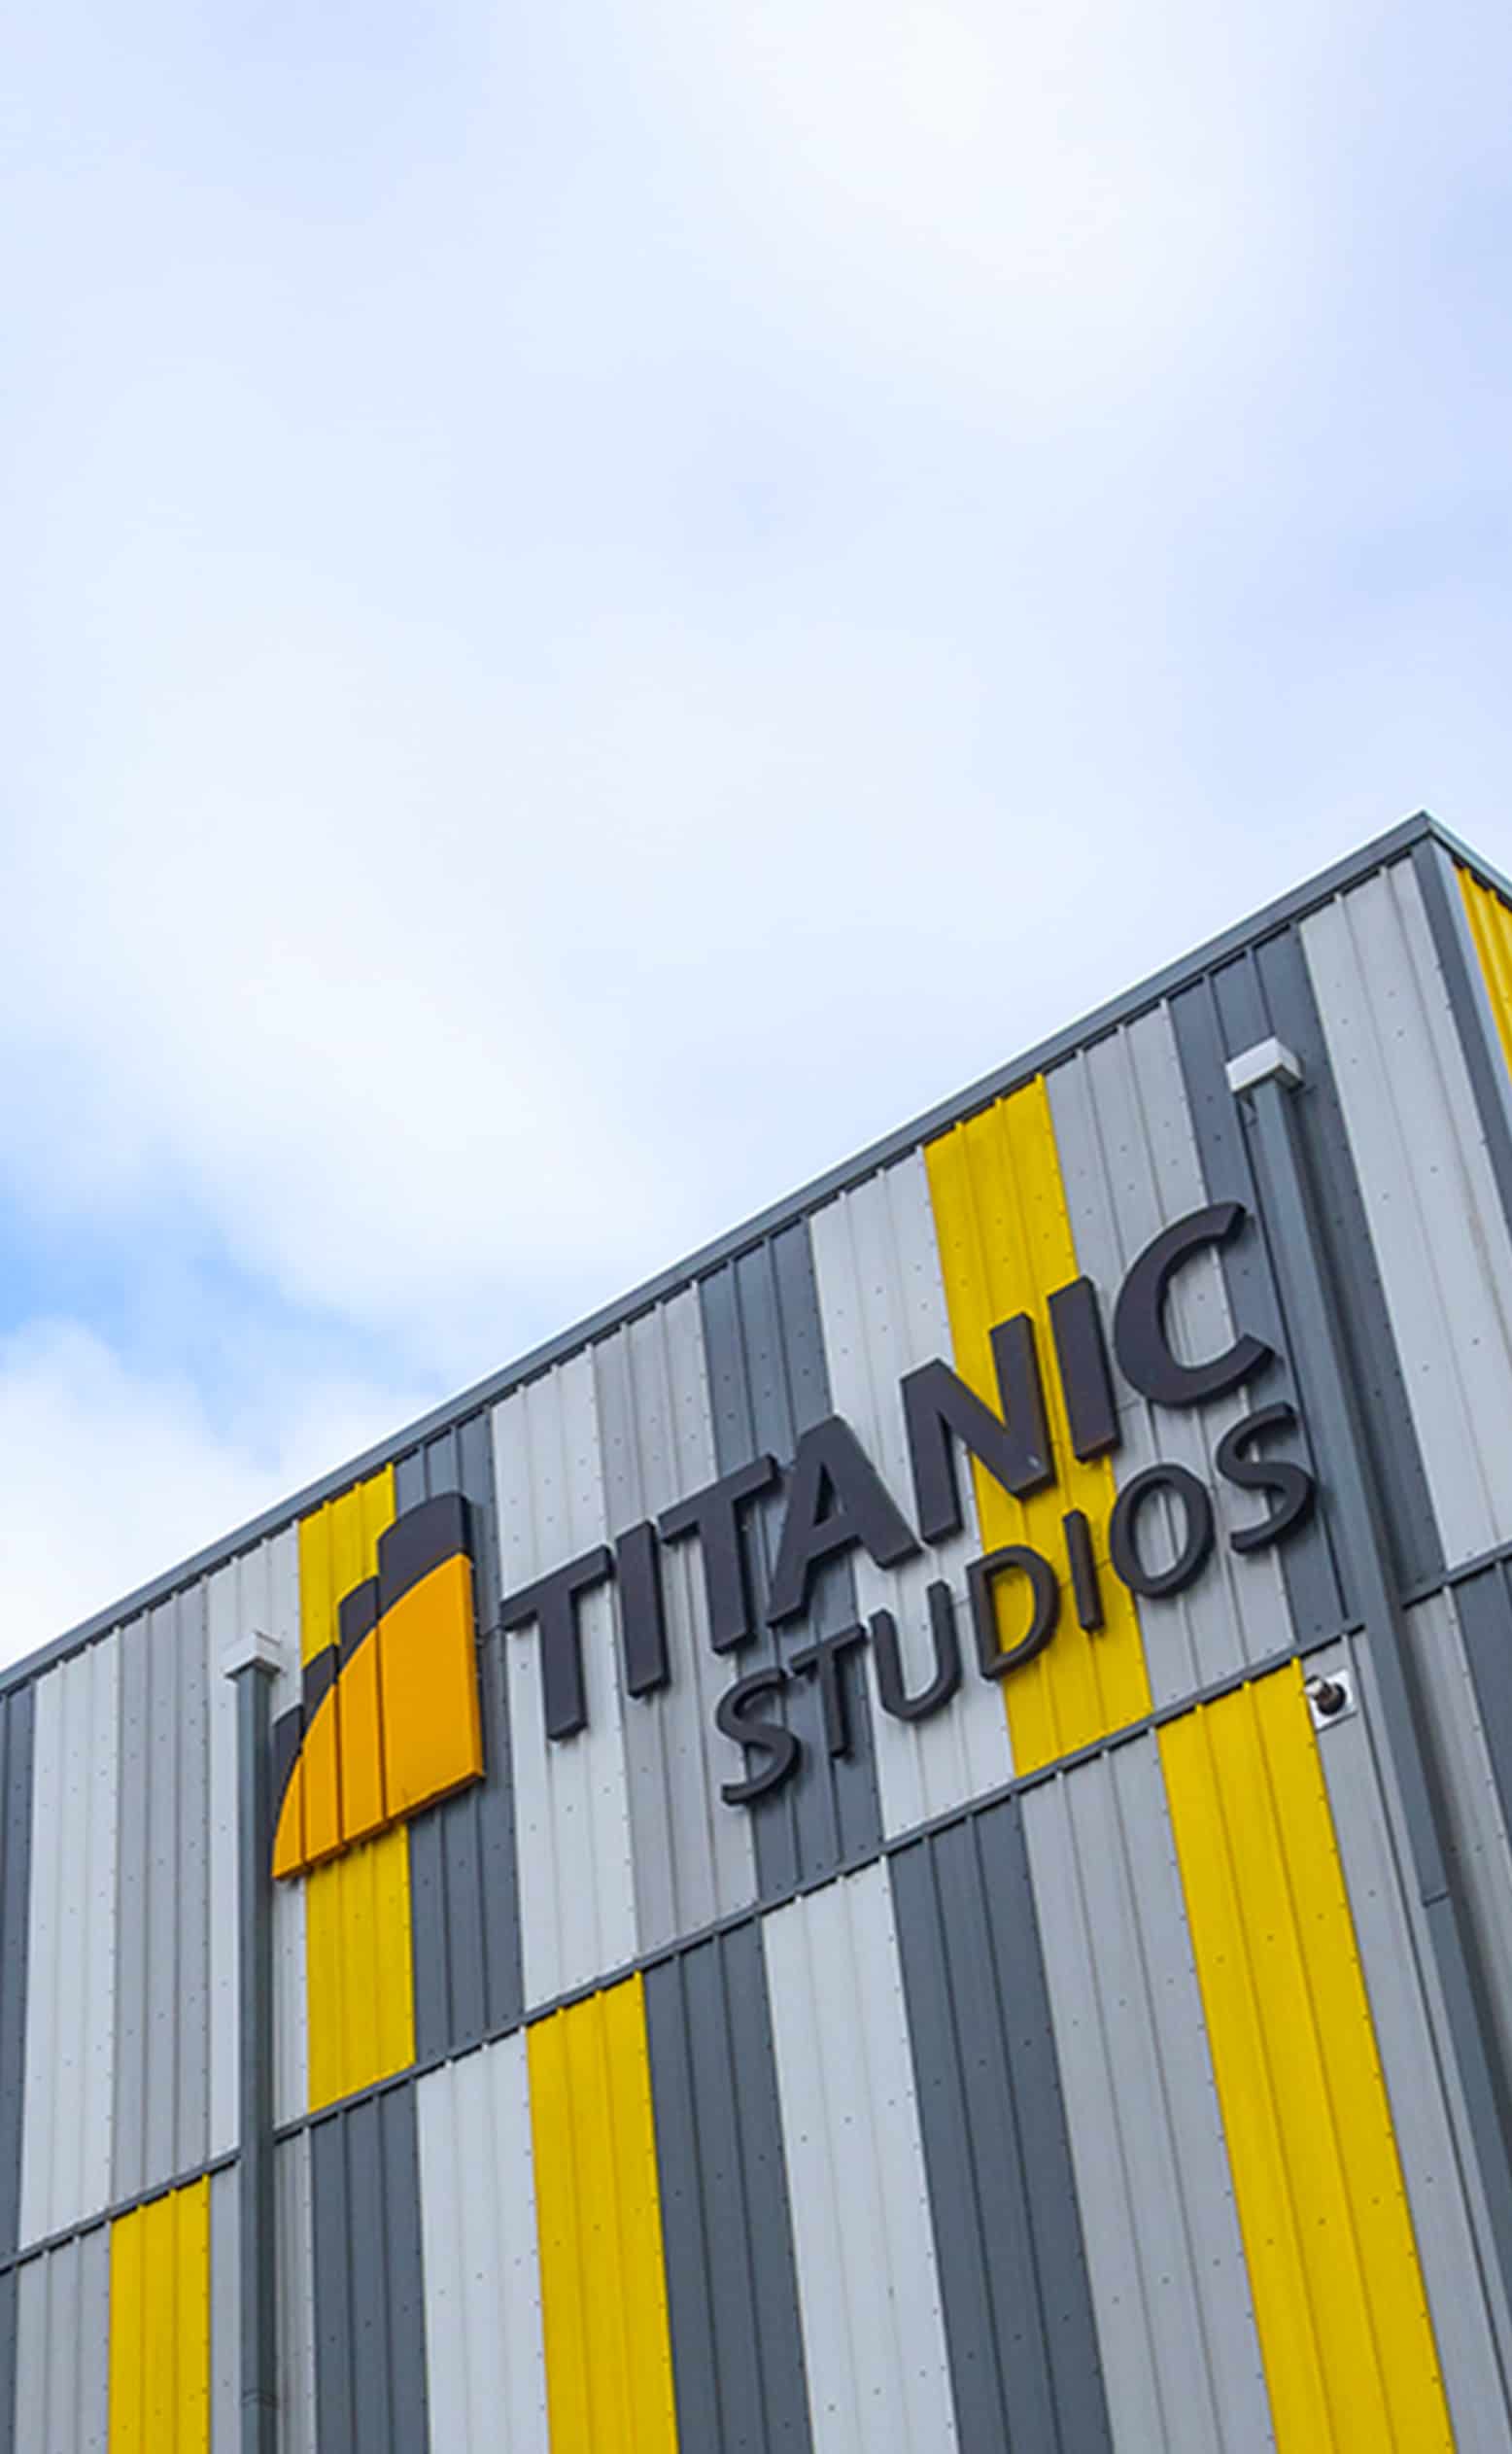 Titanic Studios